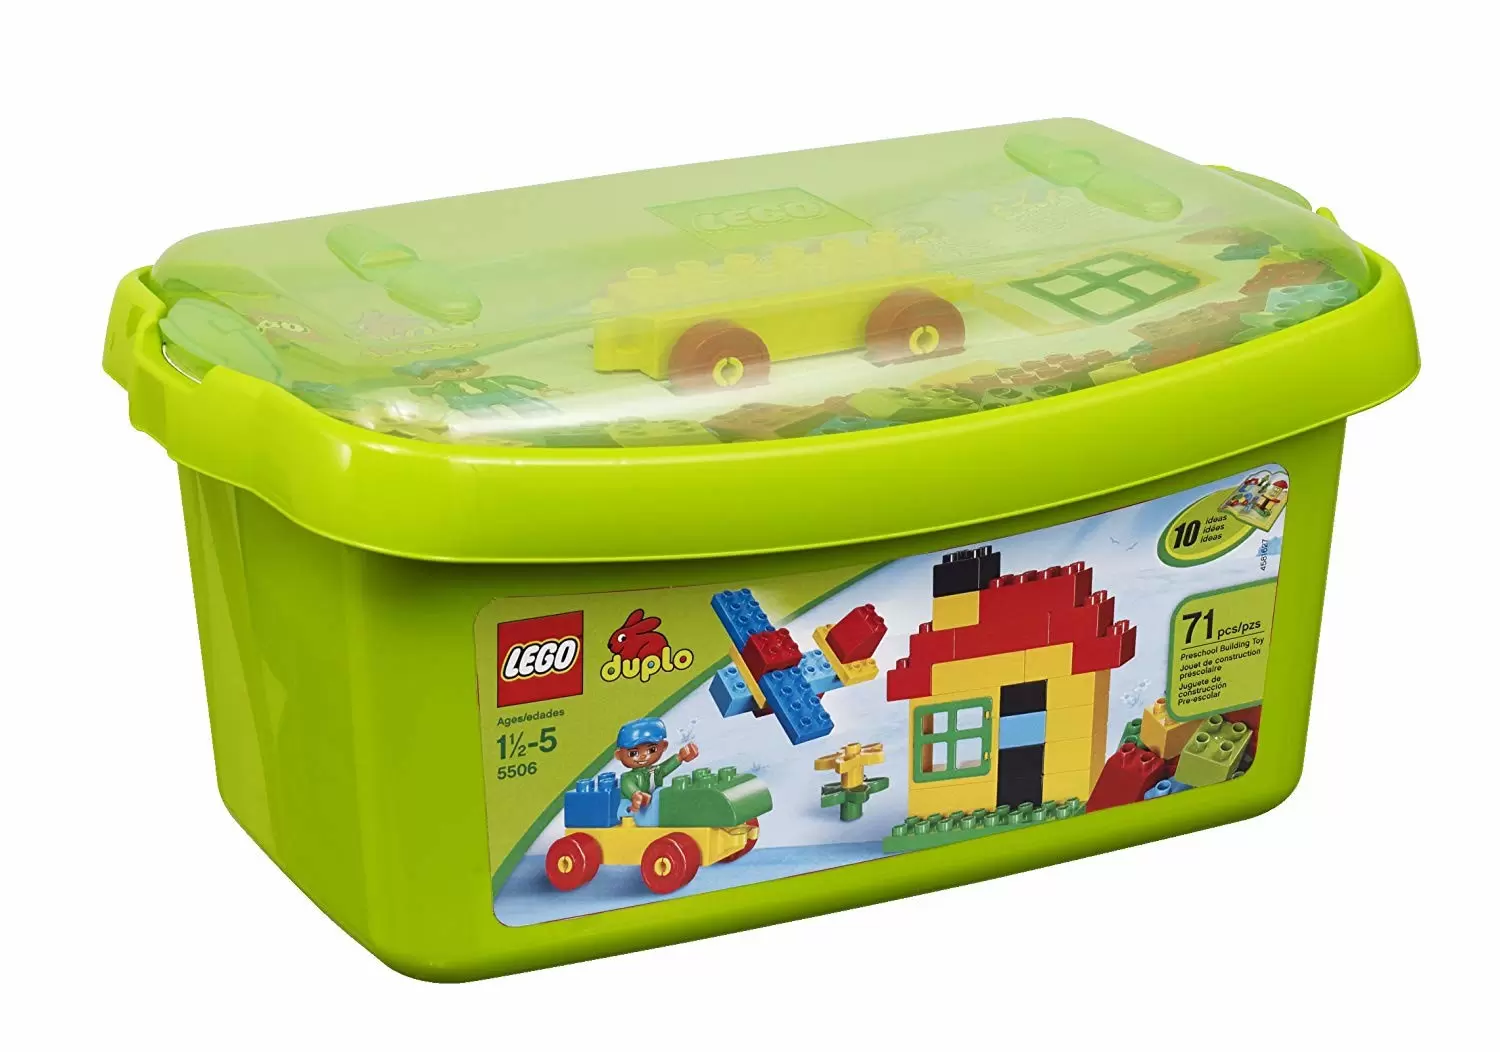 LEGO Duplo - Duplo Large Brick Box